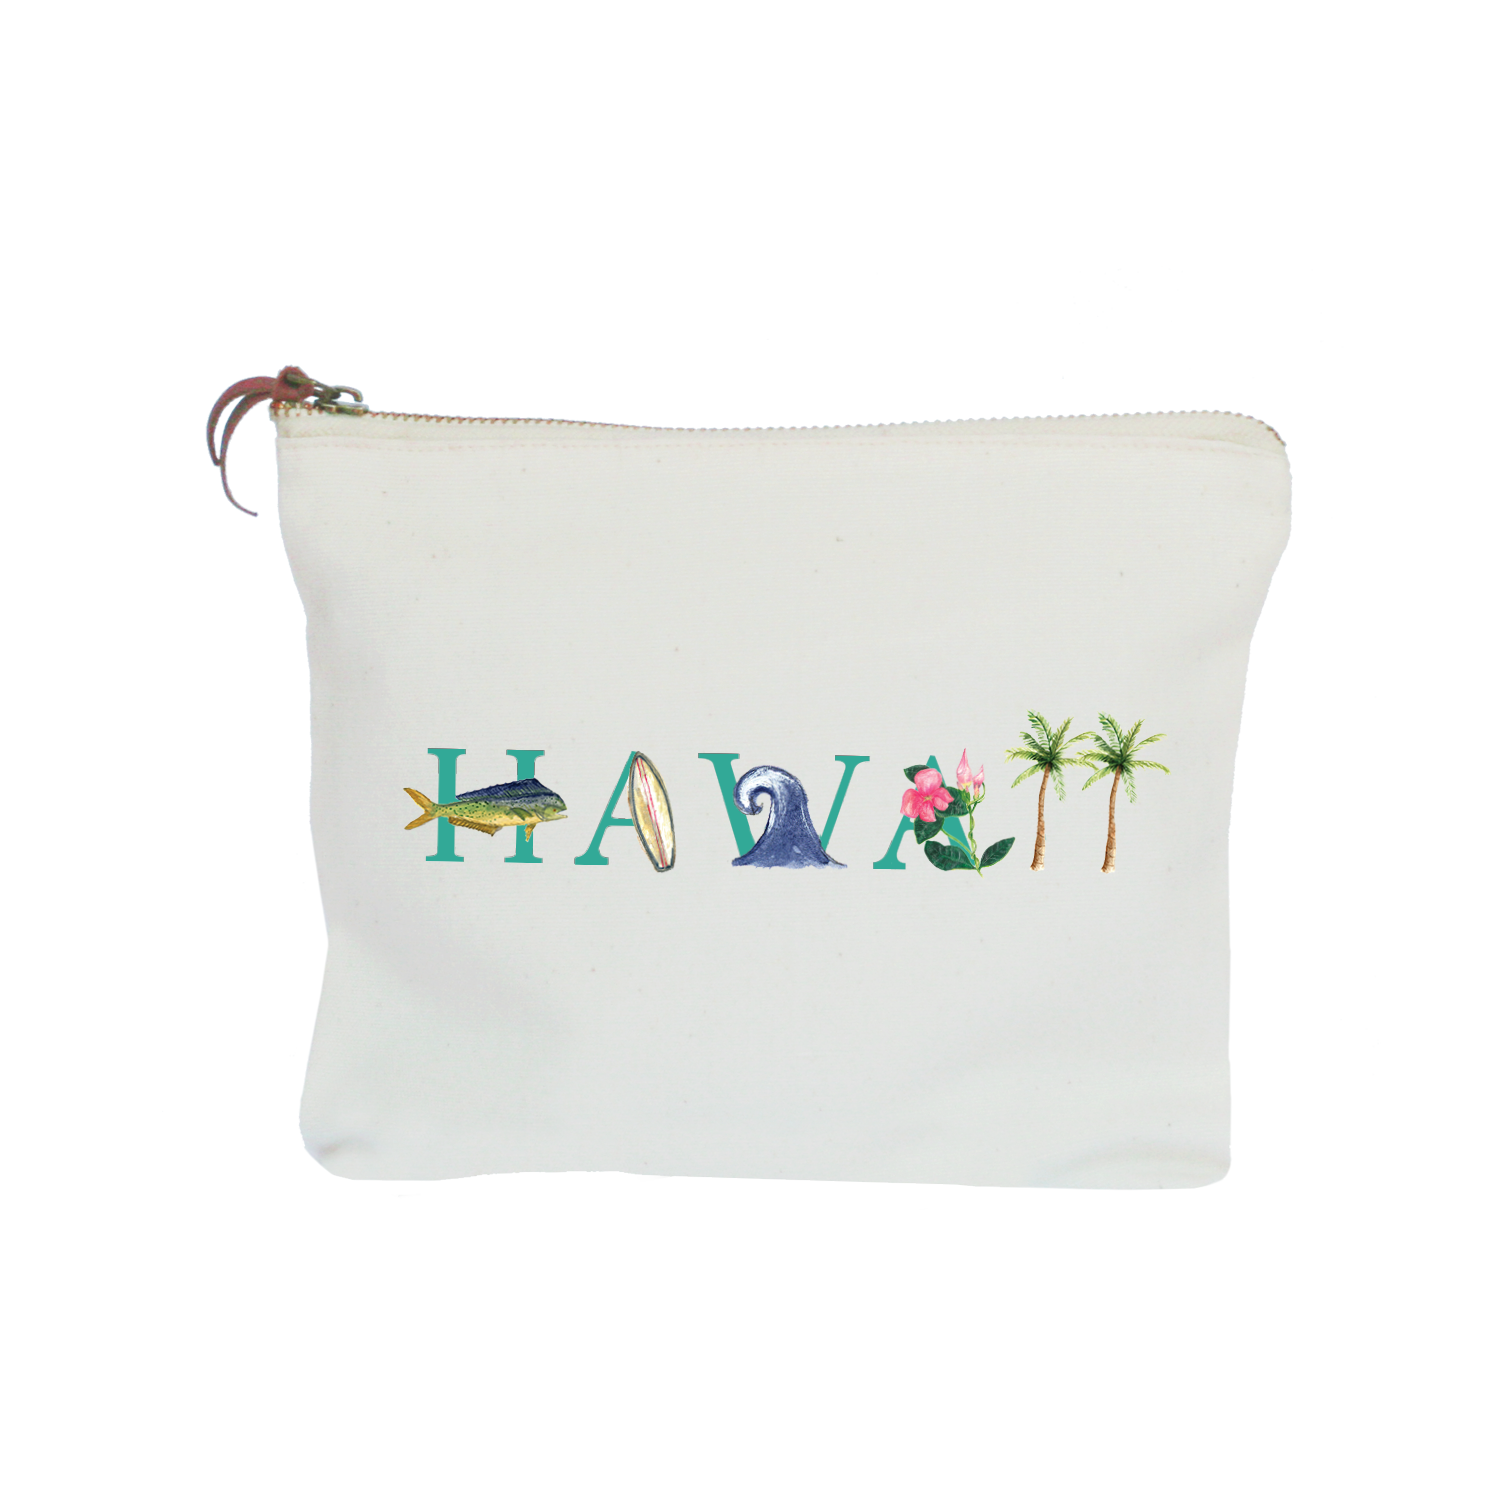 Hawaii zipper pouch